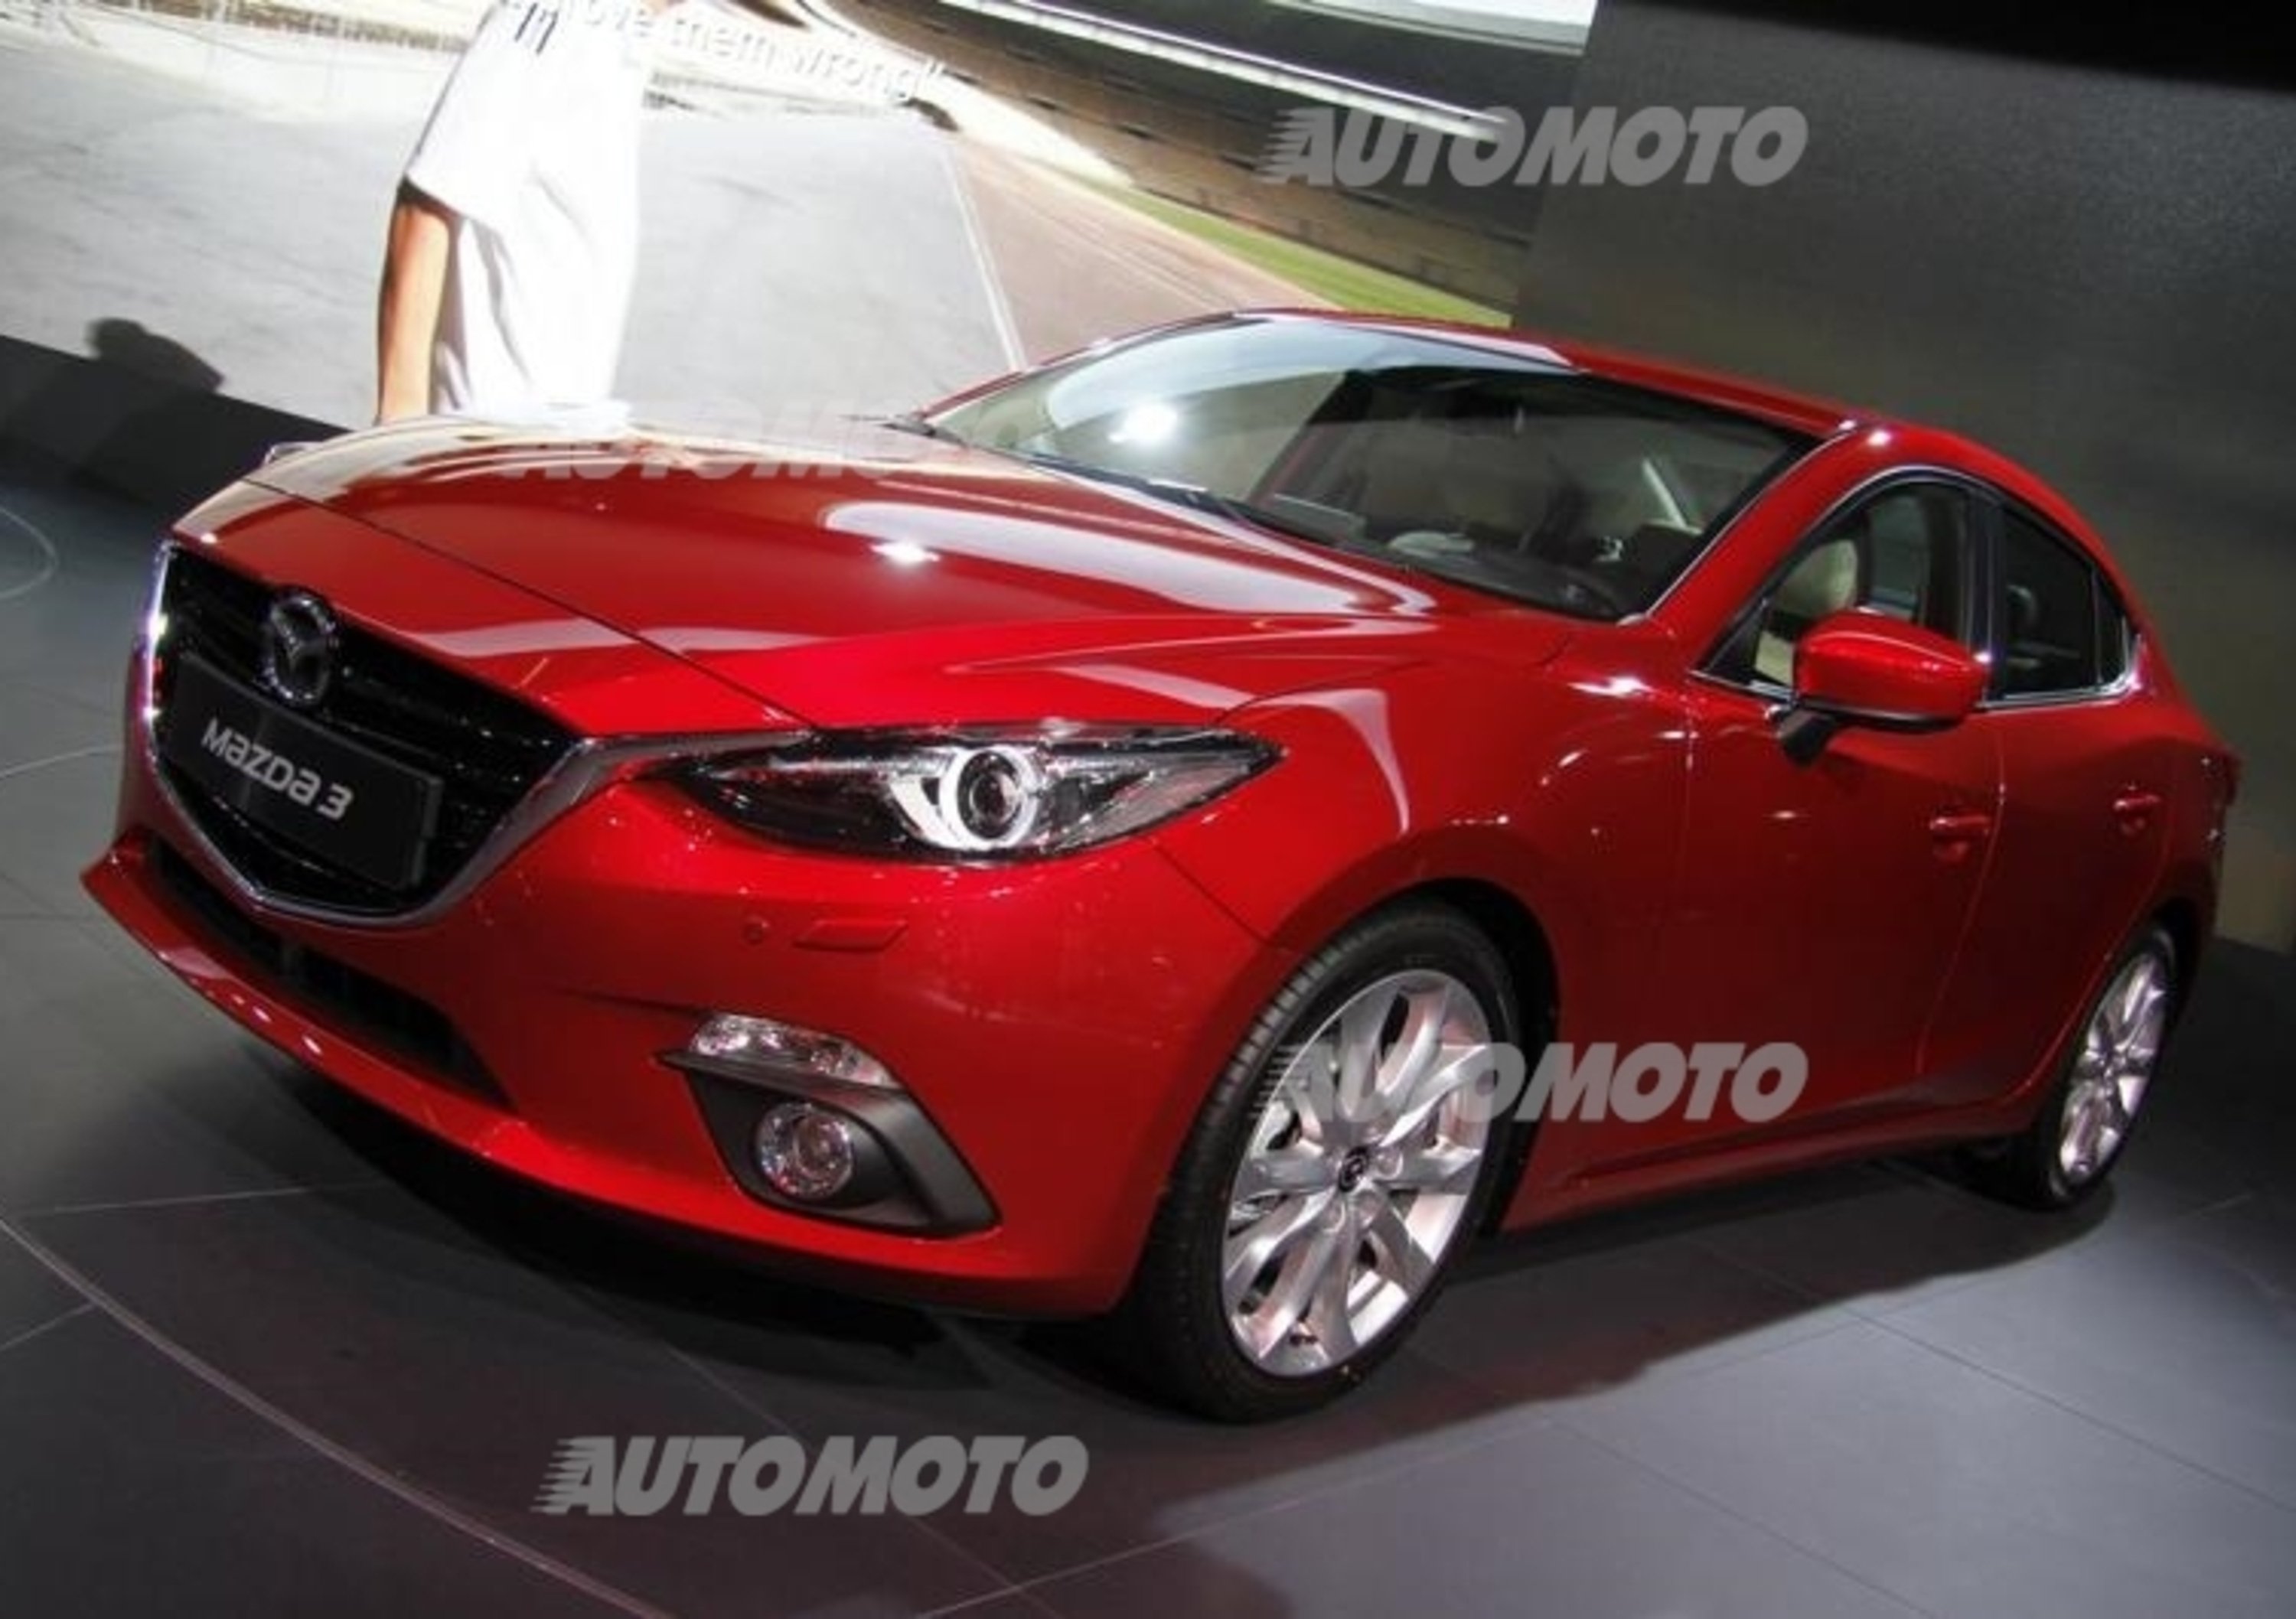 Fiaschetti: &laquo;Il 2.2 diesel della Mazda3 ha costi di gestione inferiori a un 1.6&raquo;